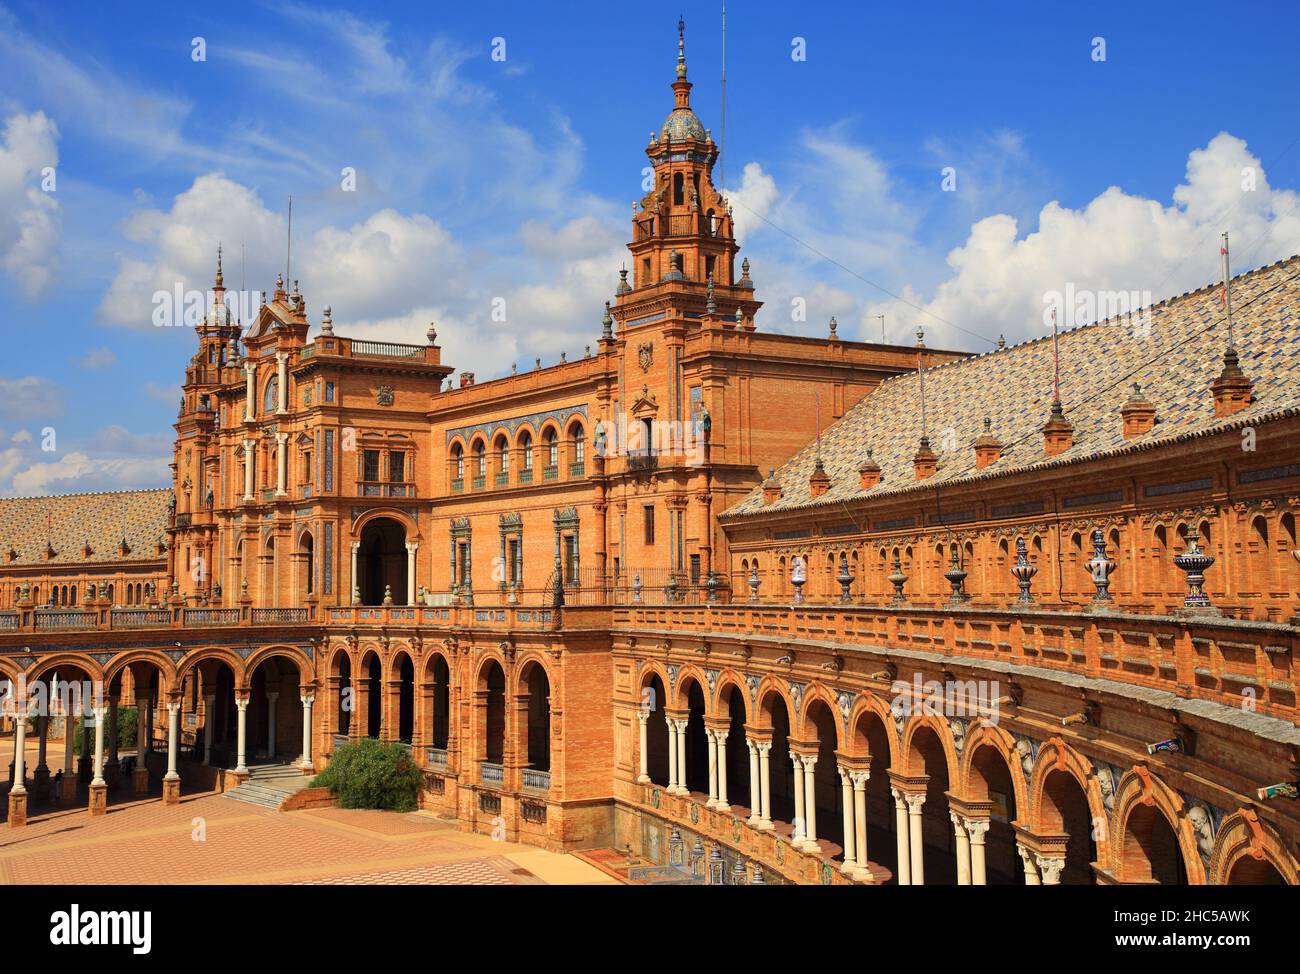 L'esterno ornato della storica Plaza de Espana - Piazza Spagnola, con piastrelle in ceramica e dettagli in stile moresco. Siviglia, Andalusia, Spagna. Foto Stock